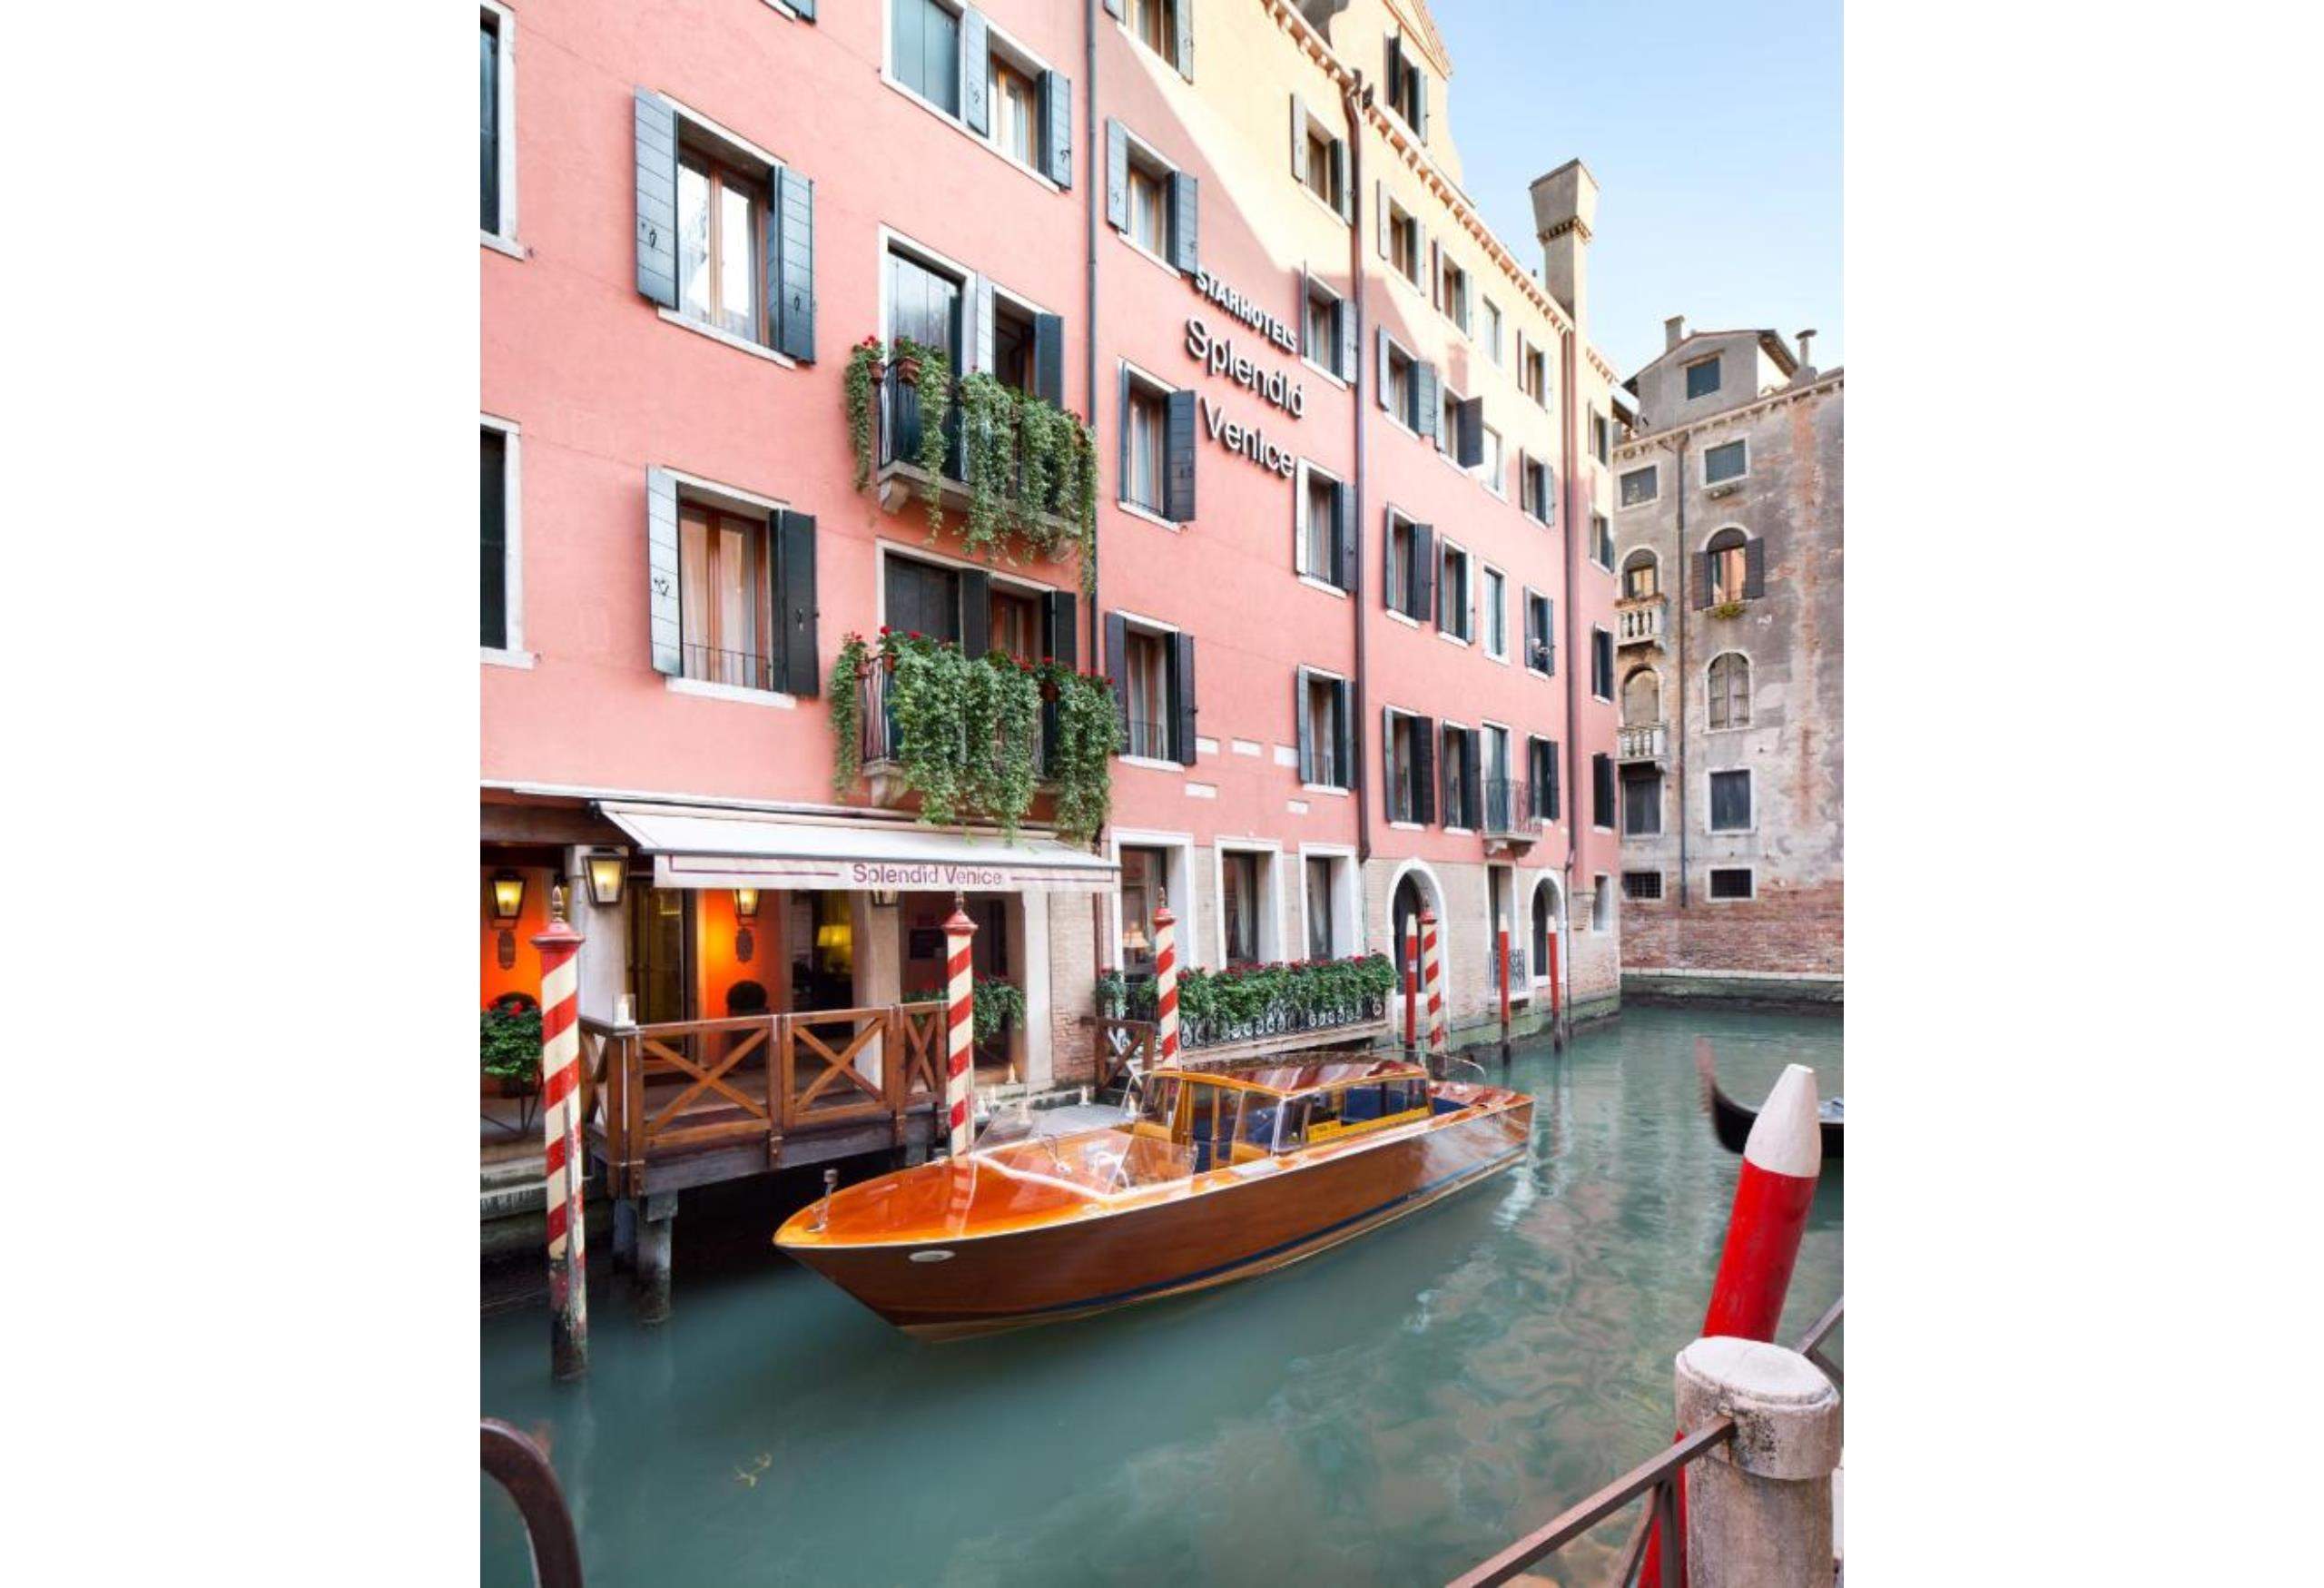 輝煌威尼斯酒店–星級酒店系列,Splendid Venice - Starhotels Collezione,威尼斯住宿,威尼斯住宿安全,威尼斯 住哪裡 好,威尼斯住宿攻略